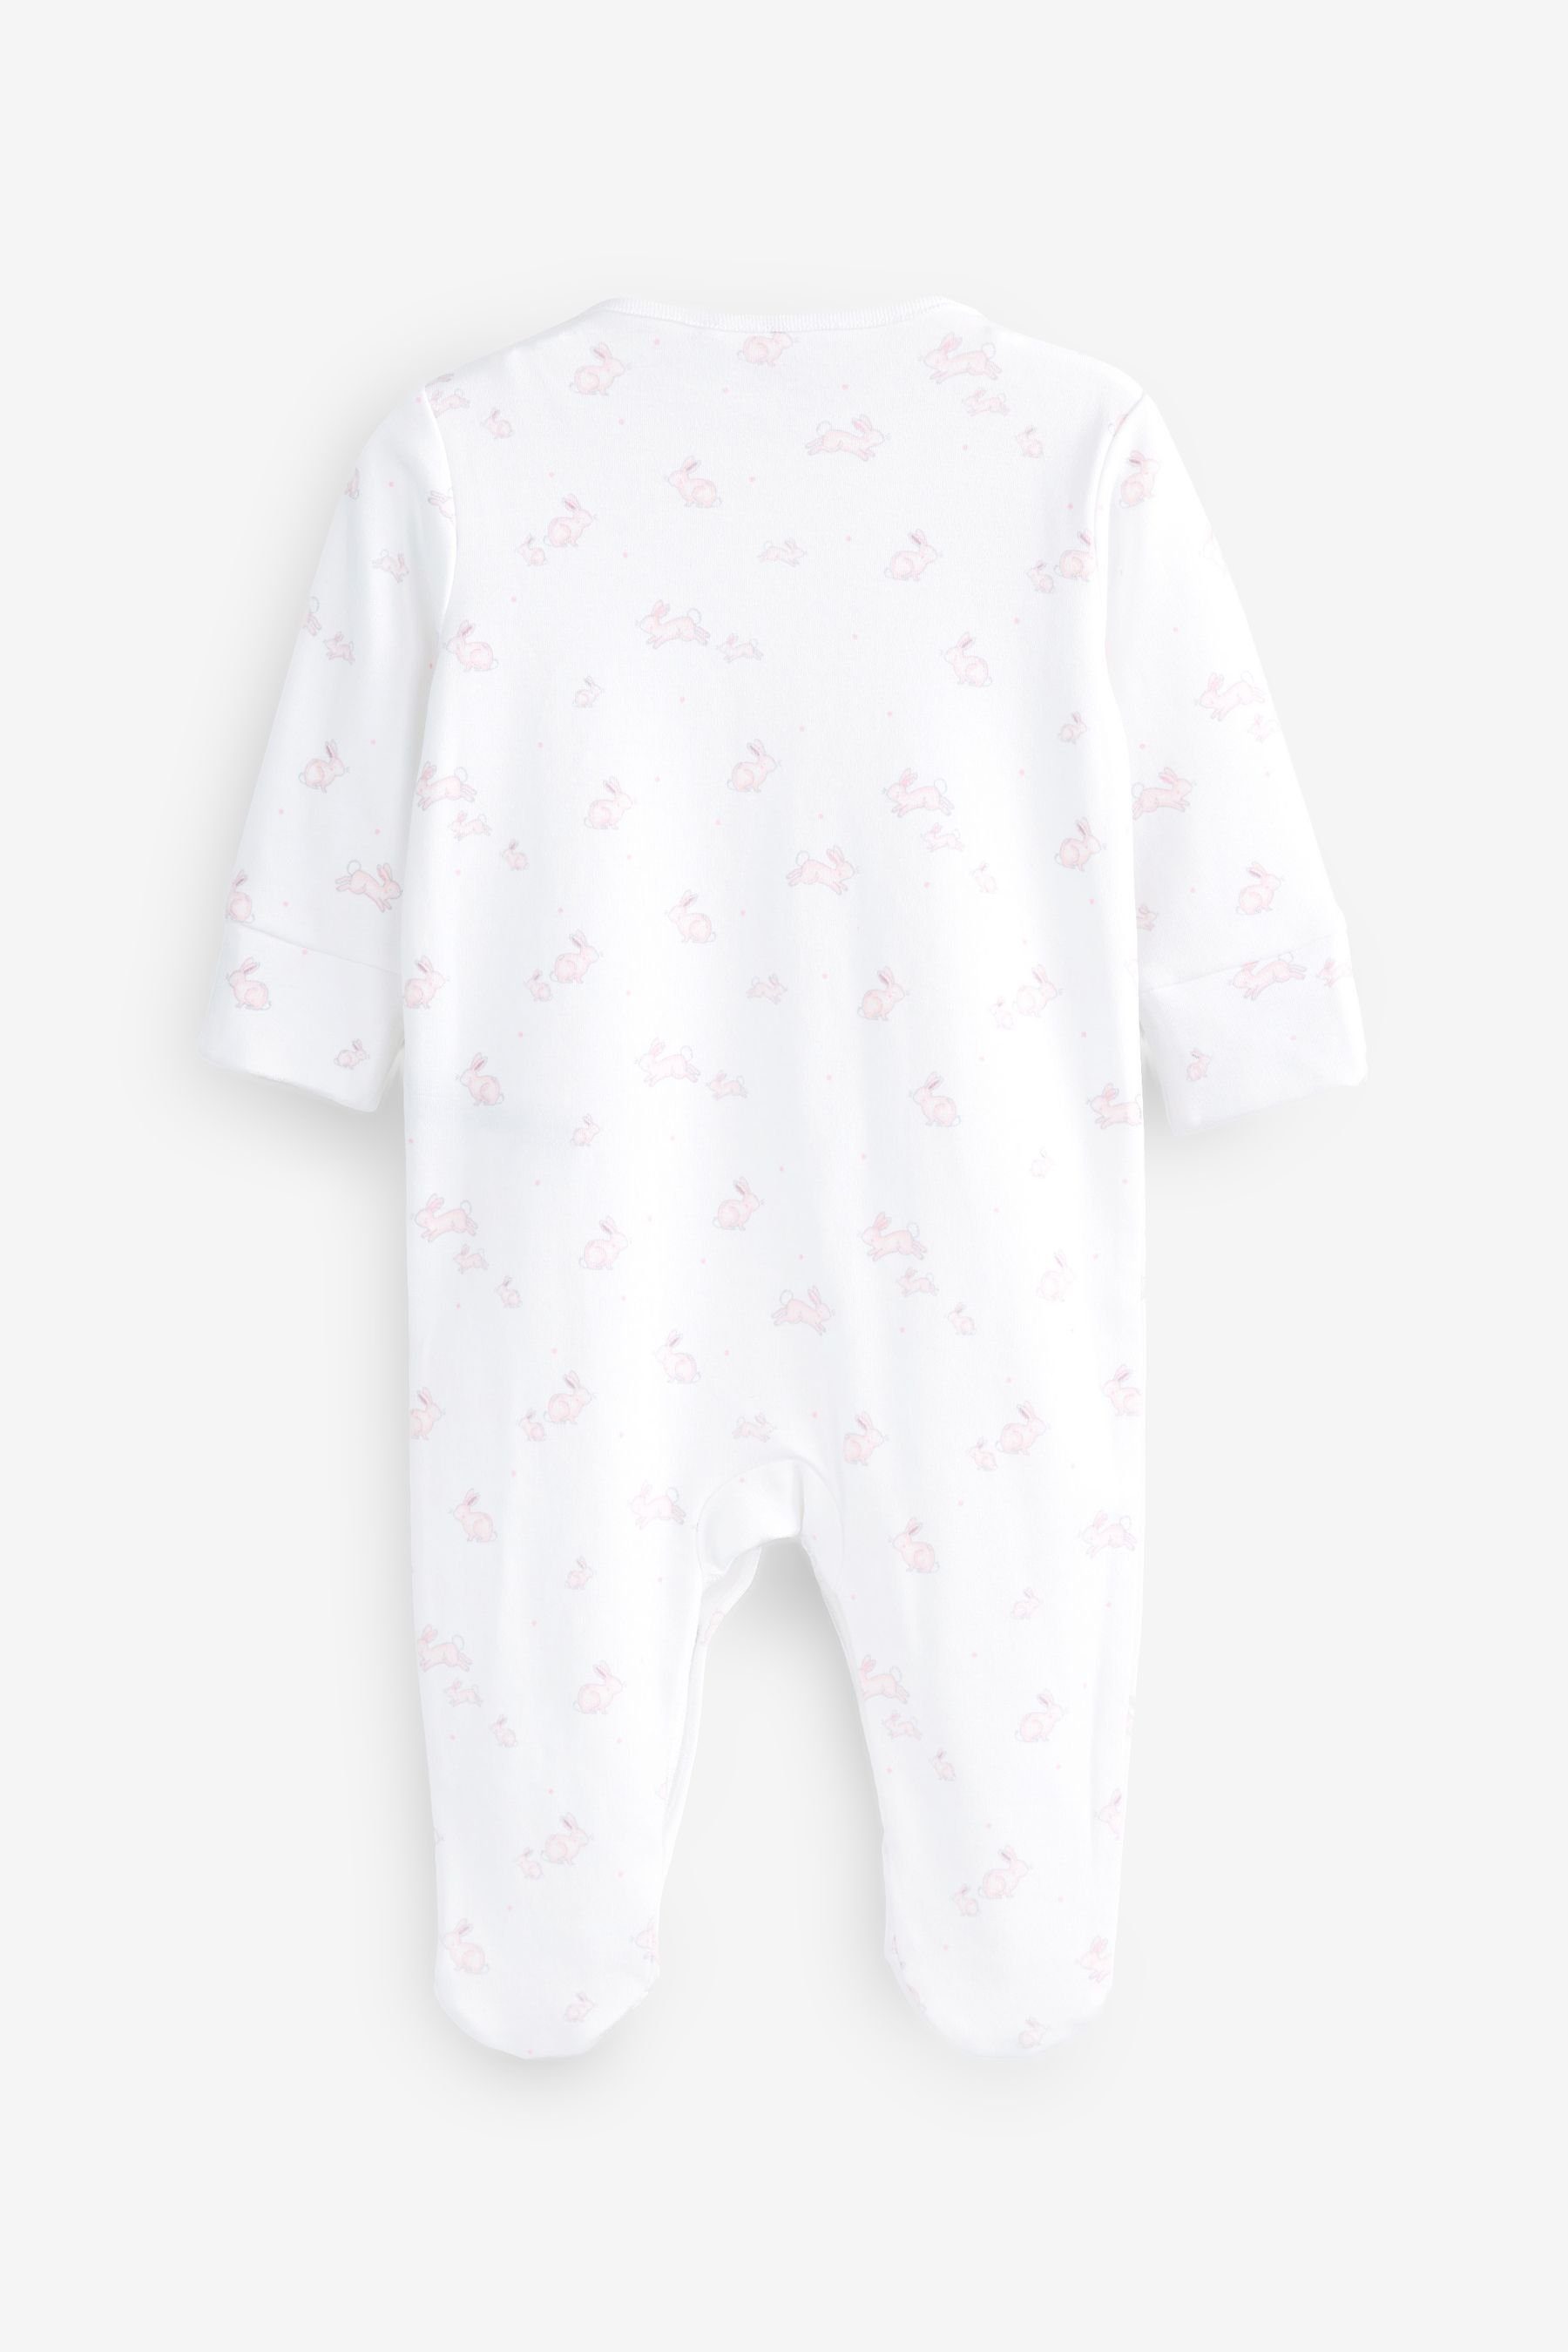 Next Schlafoverall 4 x Delicate Pink Pale Babys (4-tlg) Schlafanzüge für Bunny